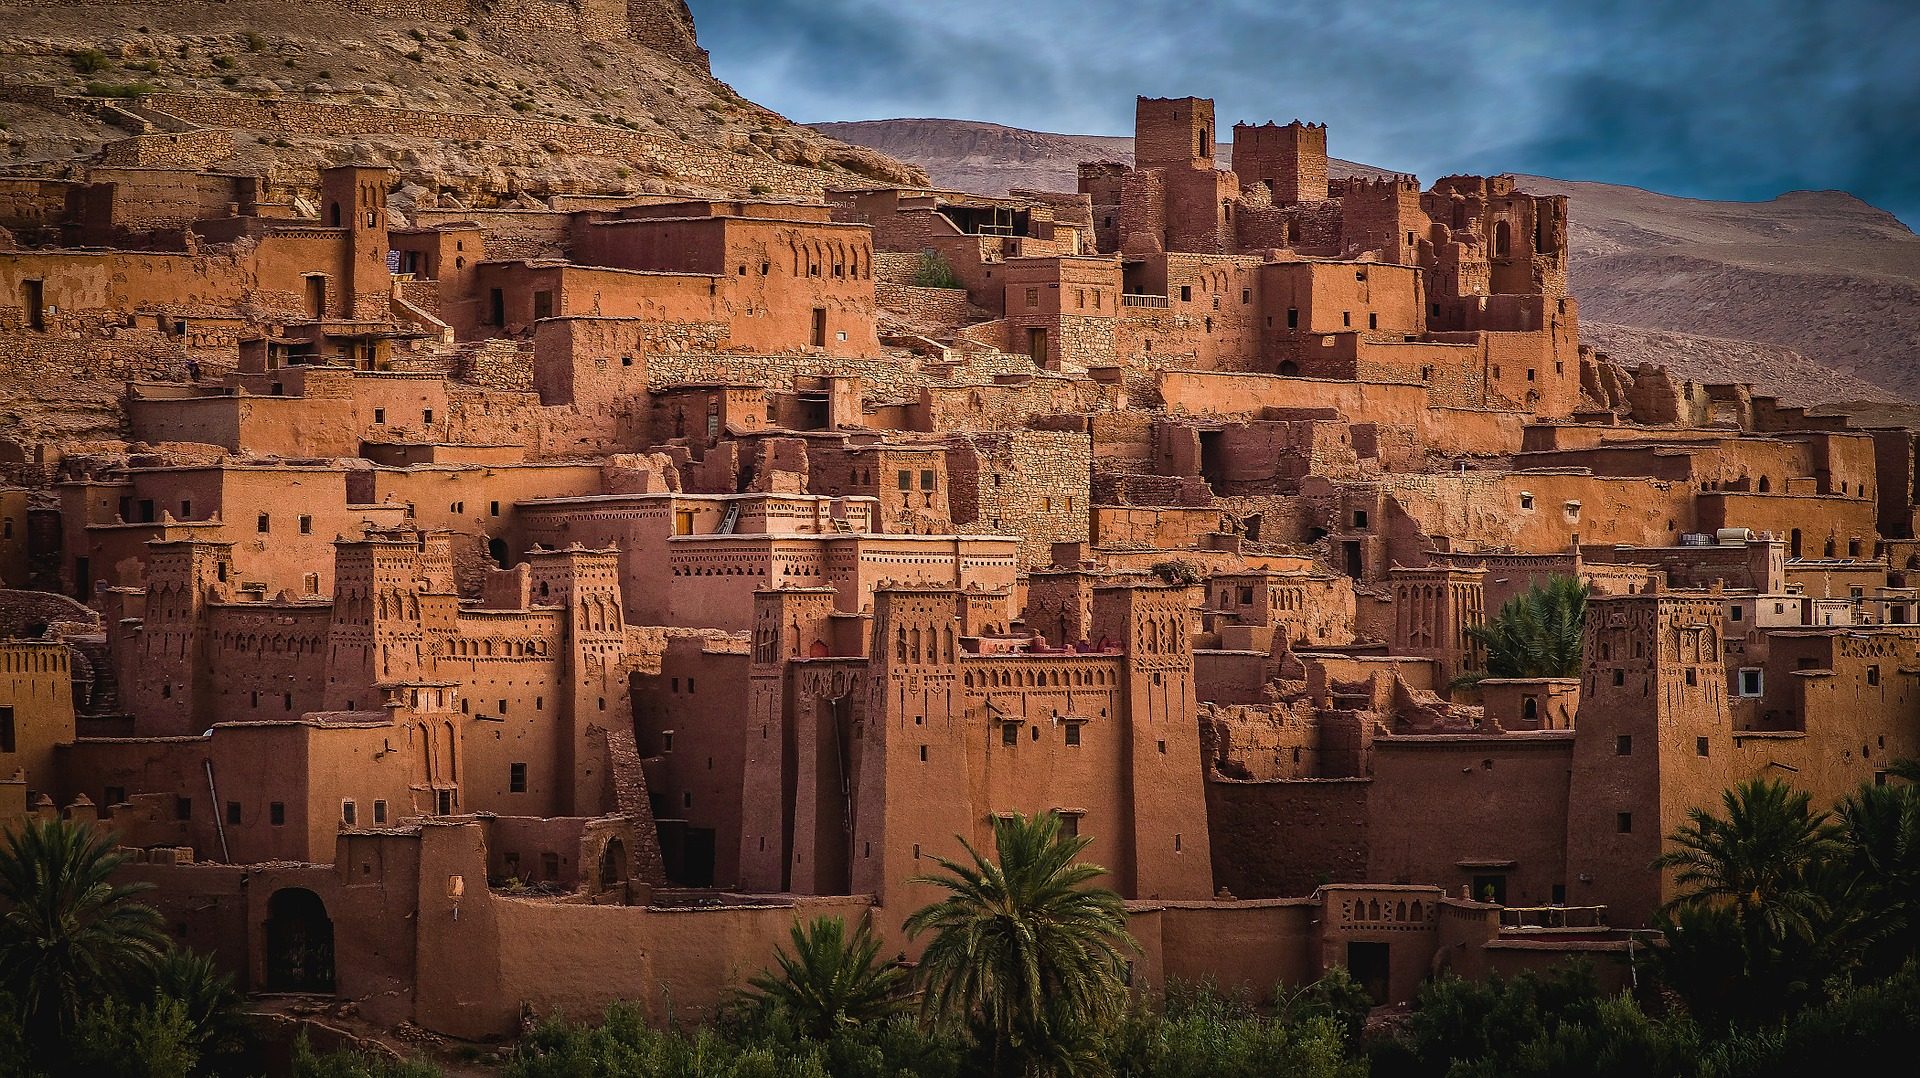 Marrakesch Halbpension günstig buchen ab 213,00€ - Eine Woche Marokko